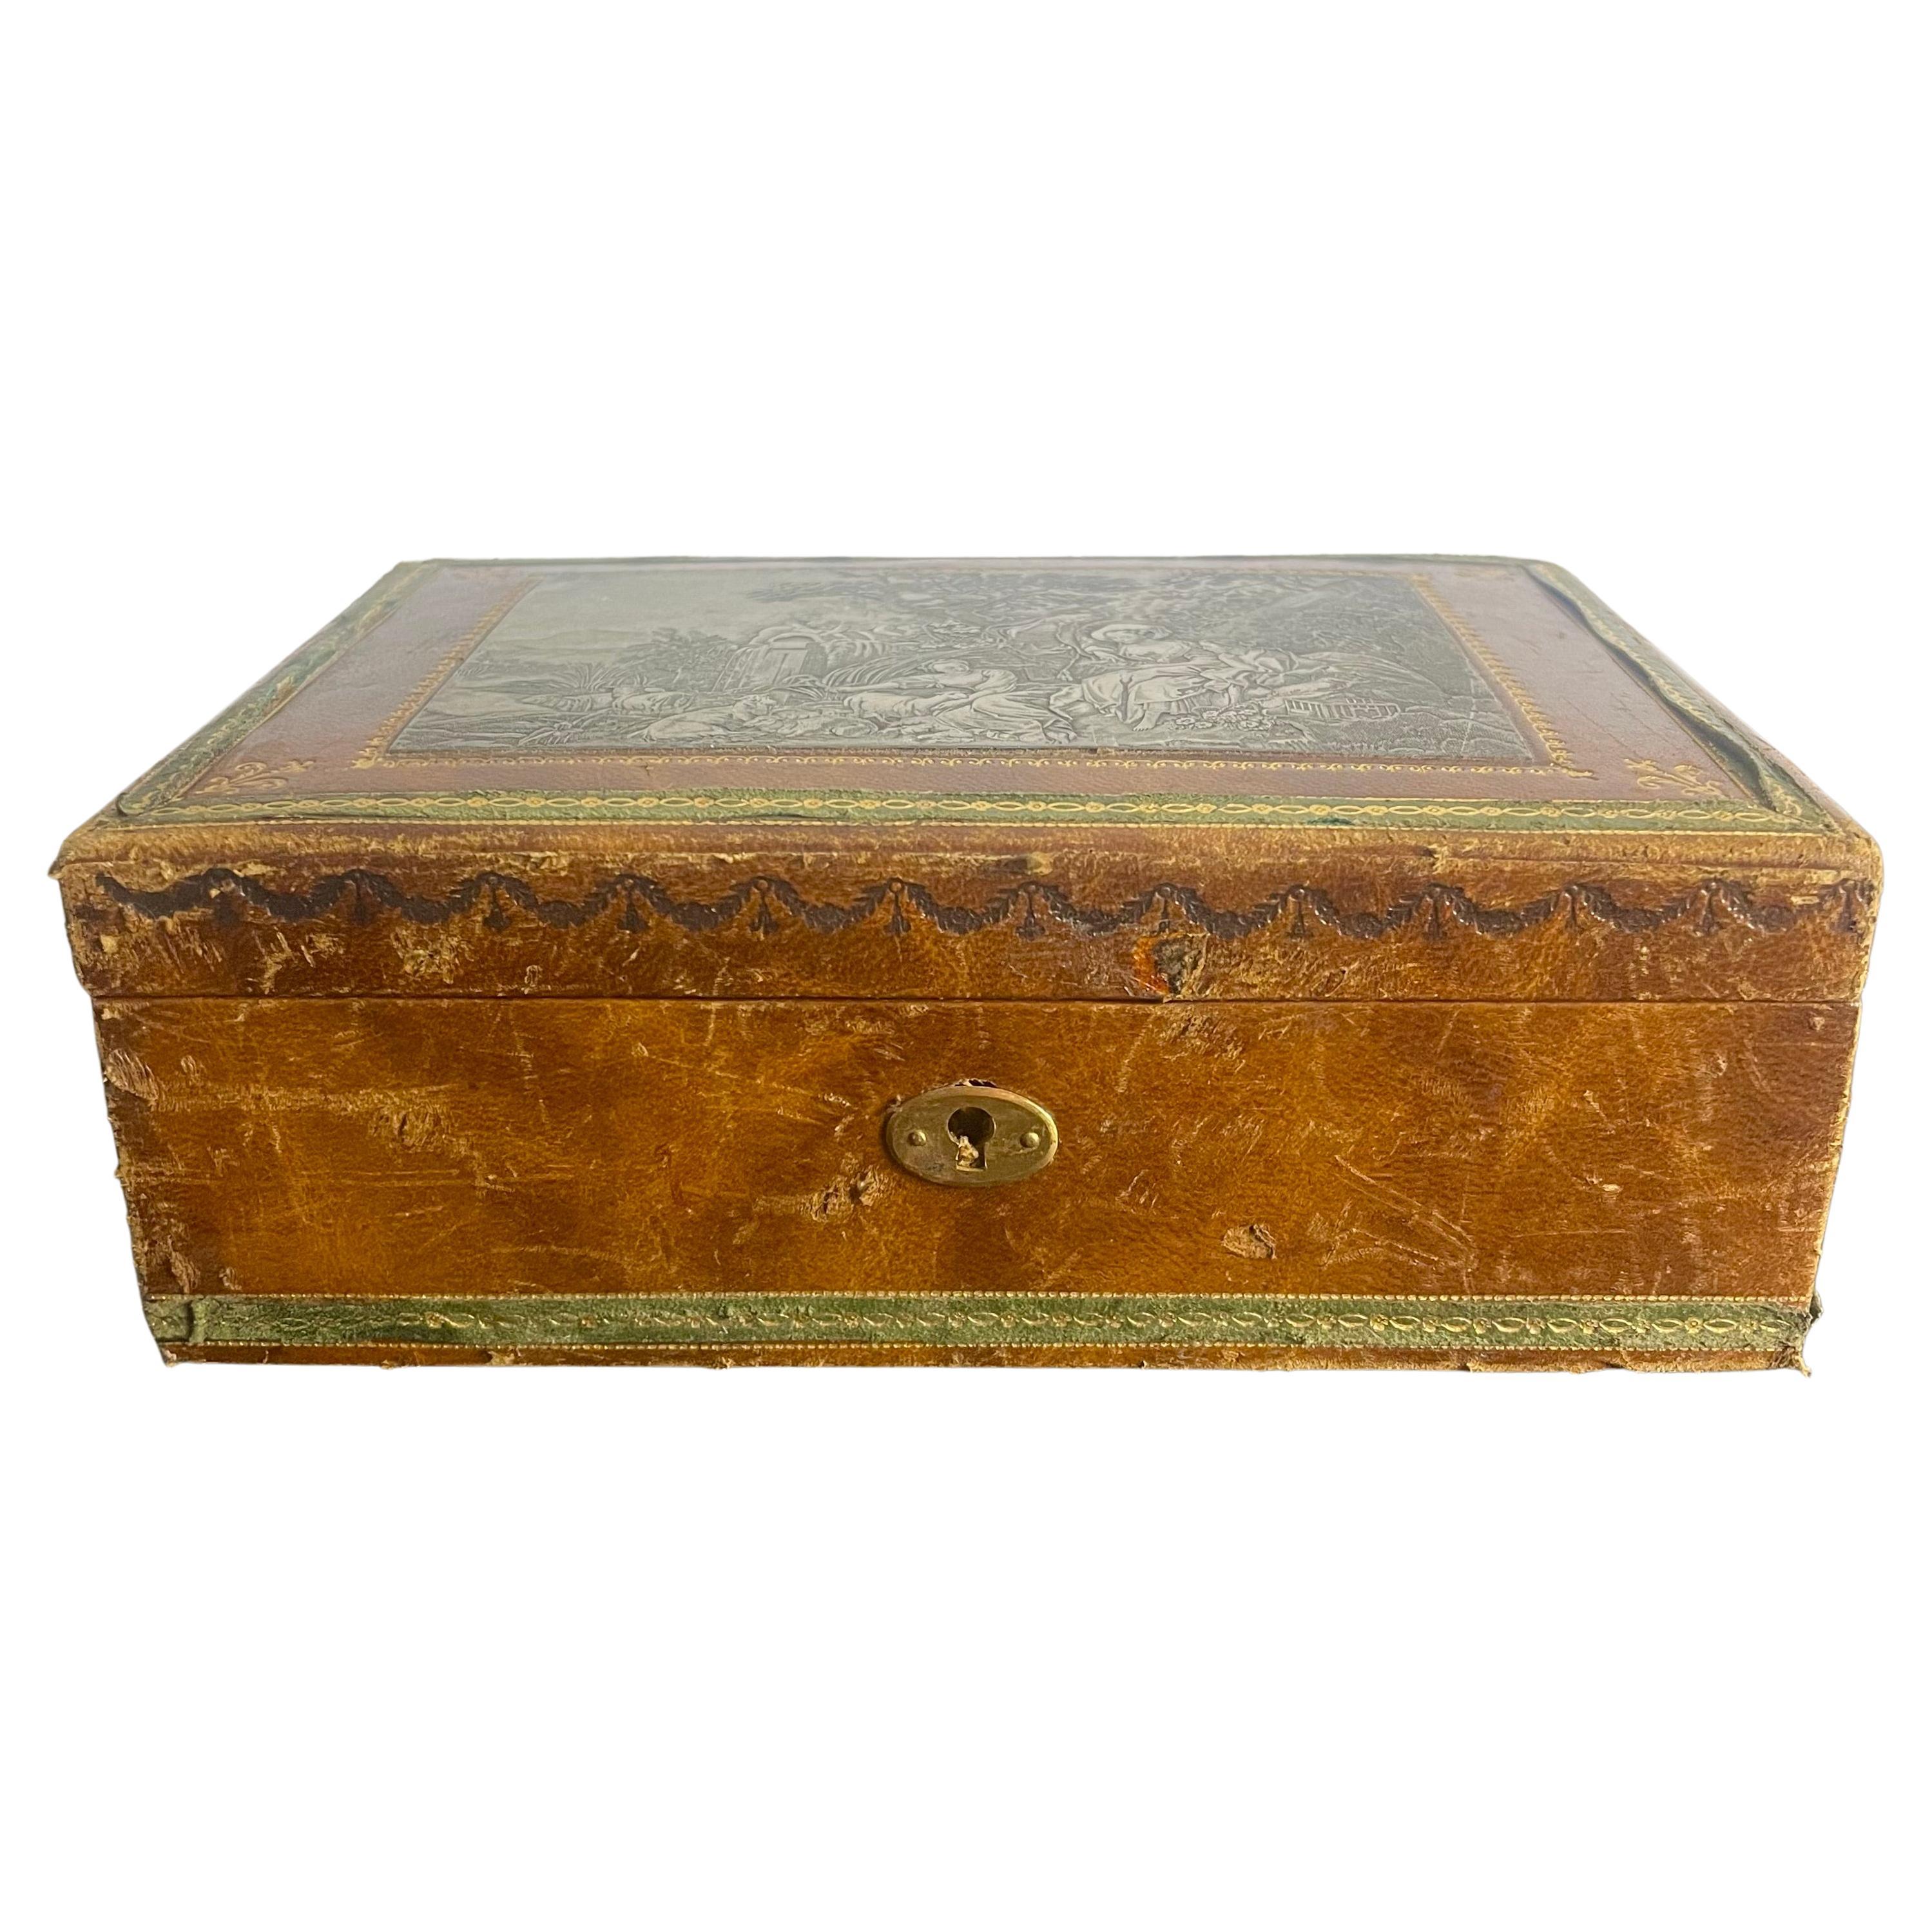 Boîte à bijoux en cuir français avec plaque incrustée et gravée - France - style Louis XVI